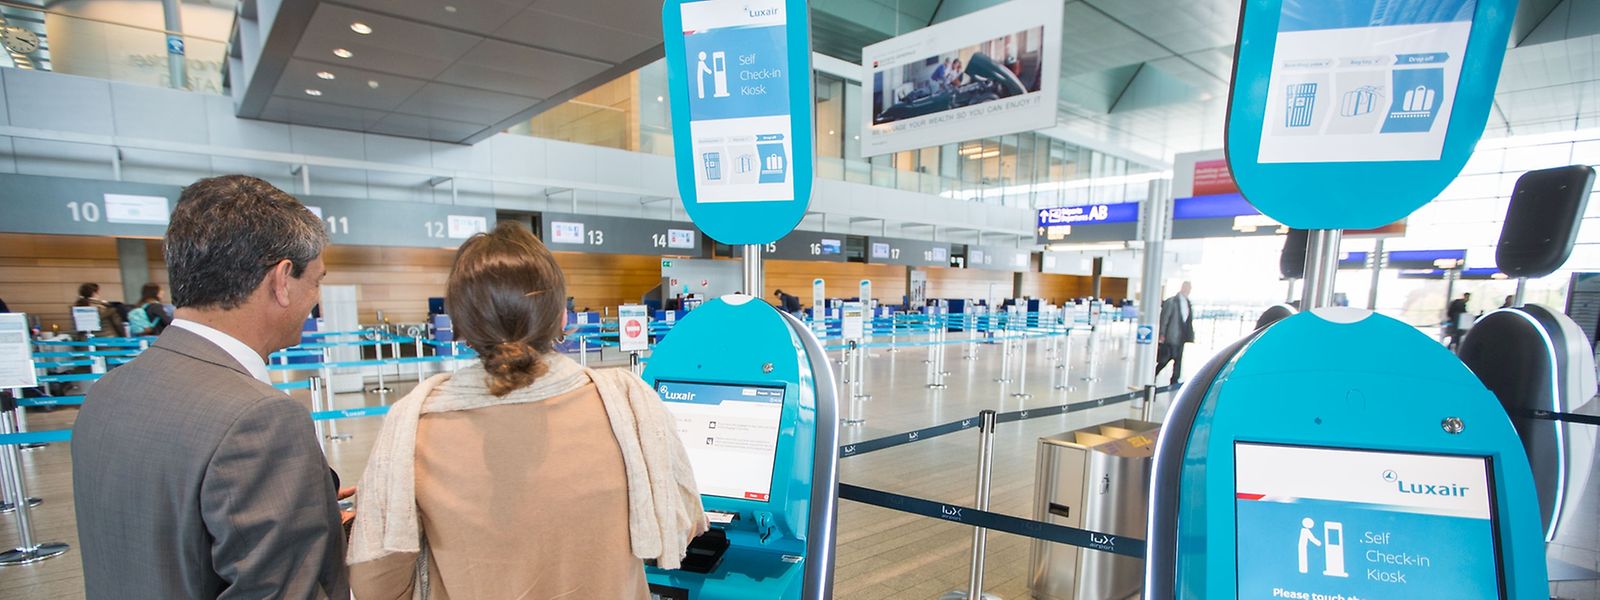 Die fünf blauen Automaten sind ausschließlich für Luxair-Passagiere. 